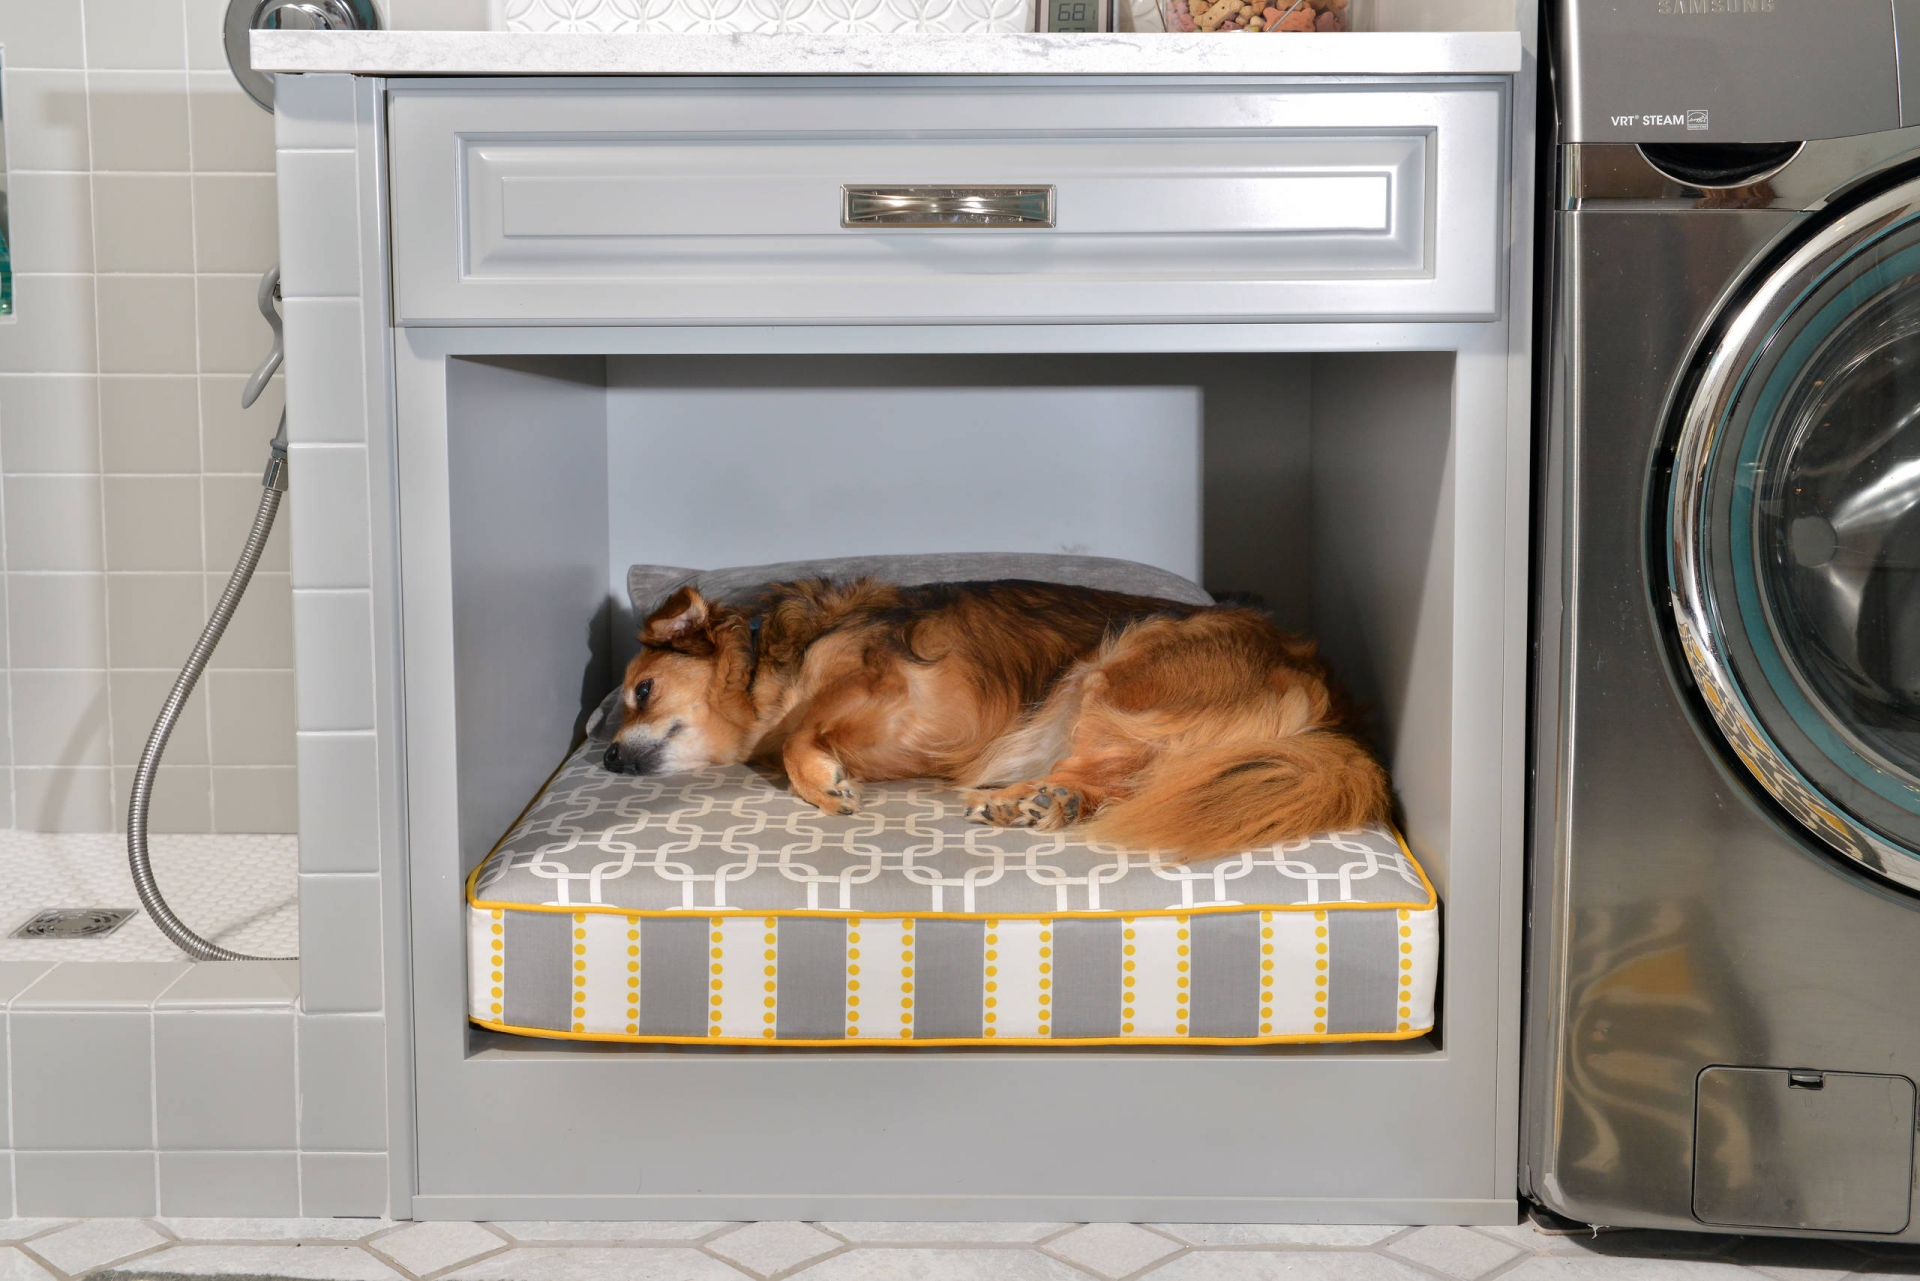 Một góc nhỏ nhắn bên cạnh chiếc máy giặt, dưới ngăn kéo tủ lưu trữ cũng đủ để trở thành thiên đường cho chú chó cưng có một giấc ngủ ngon lành trên chiếc đệm dày.